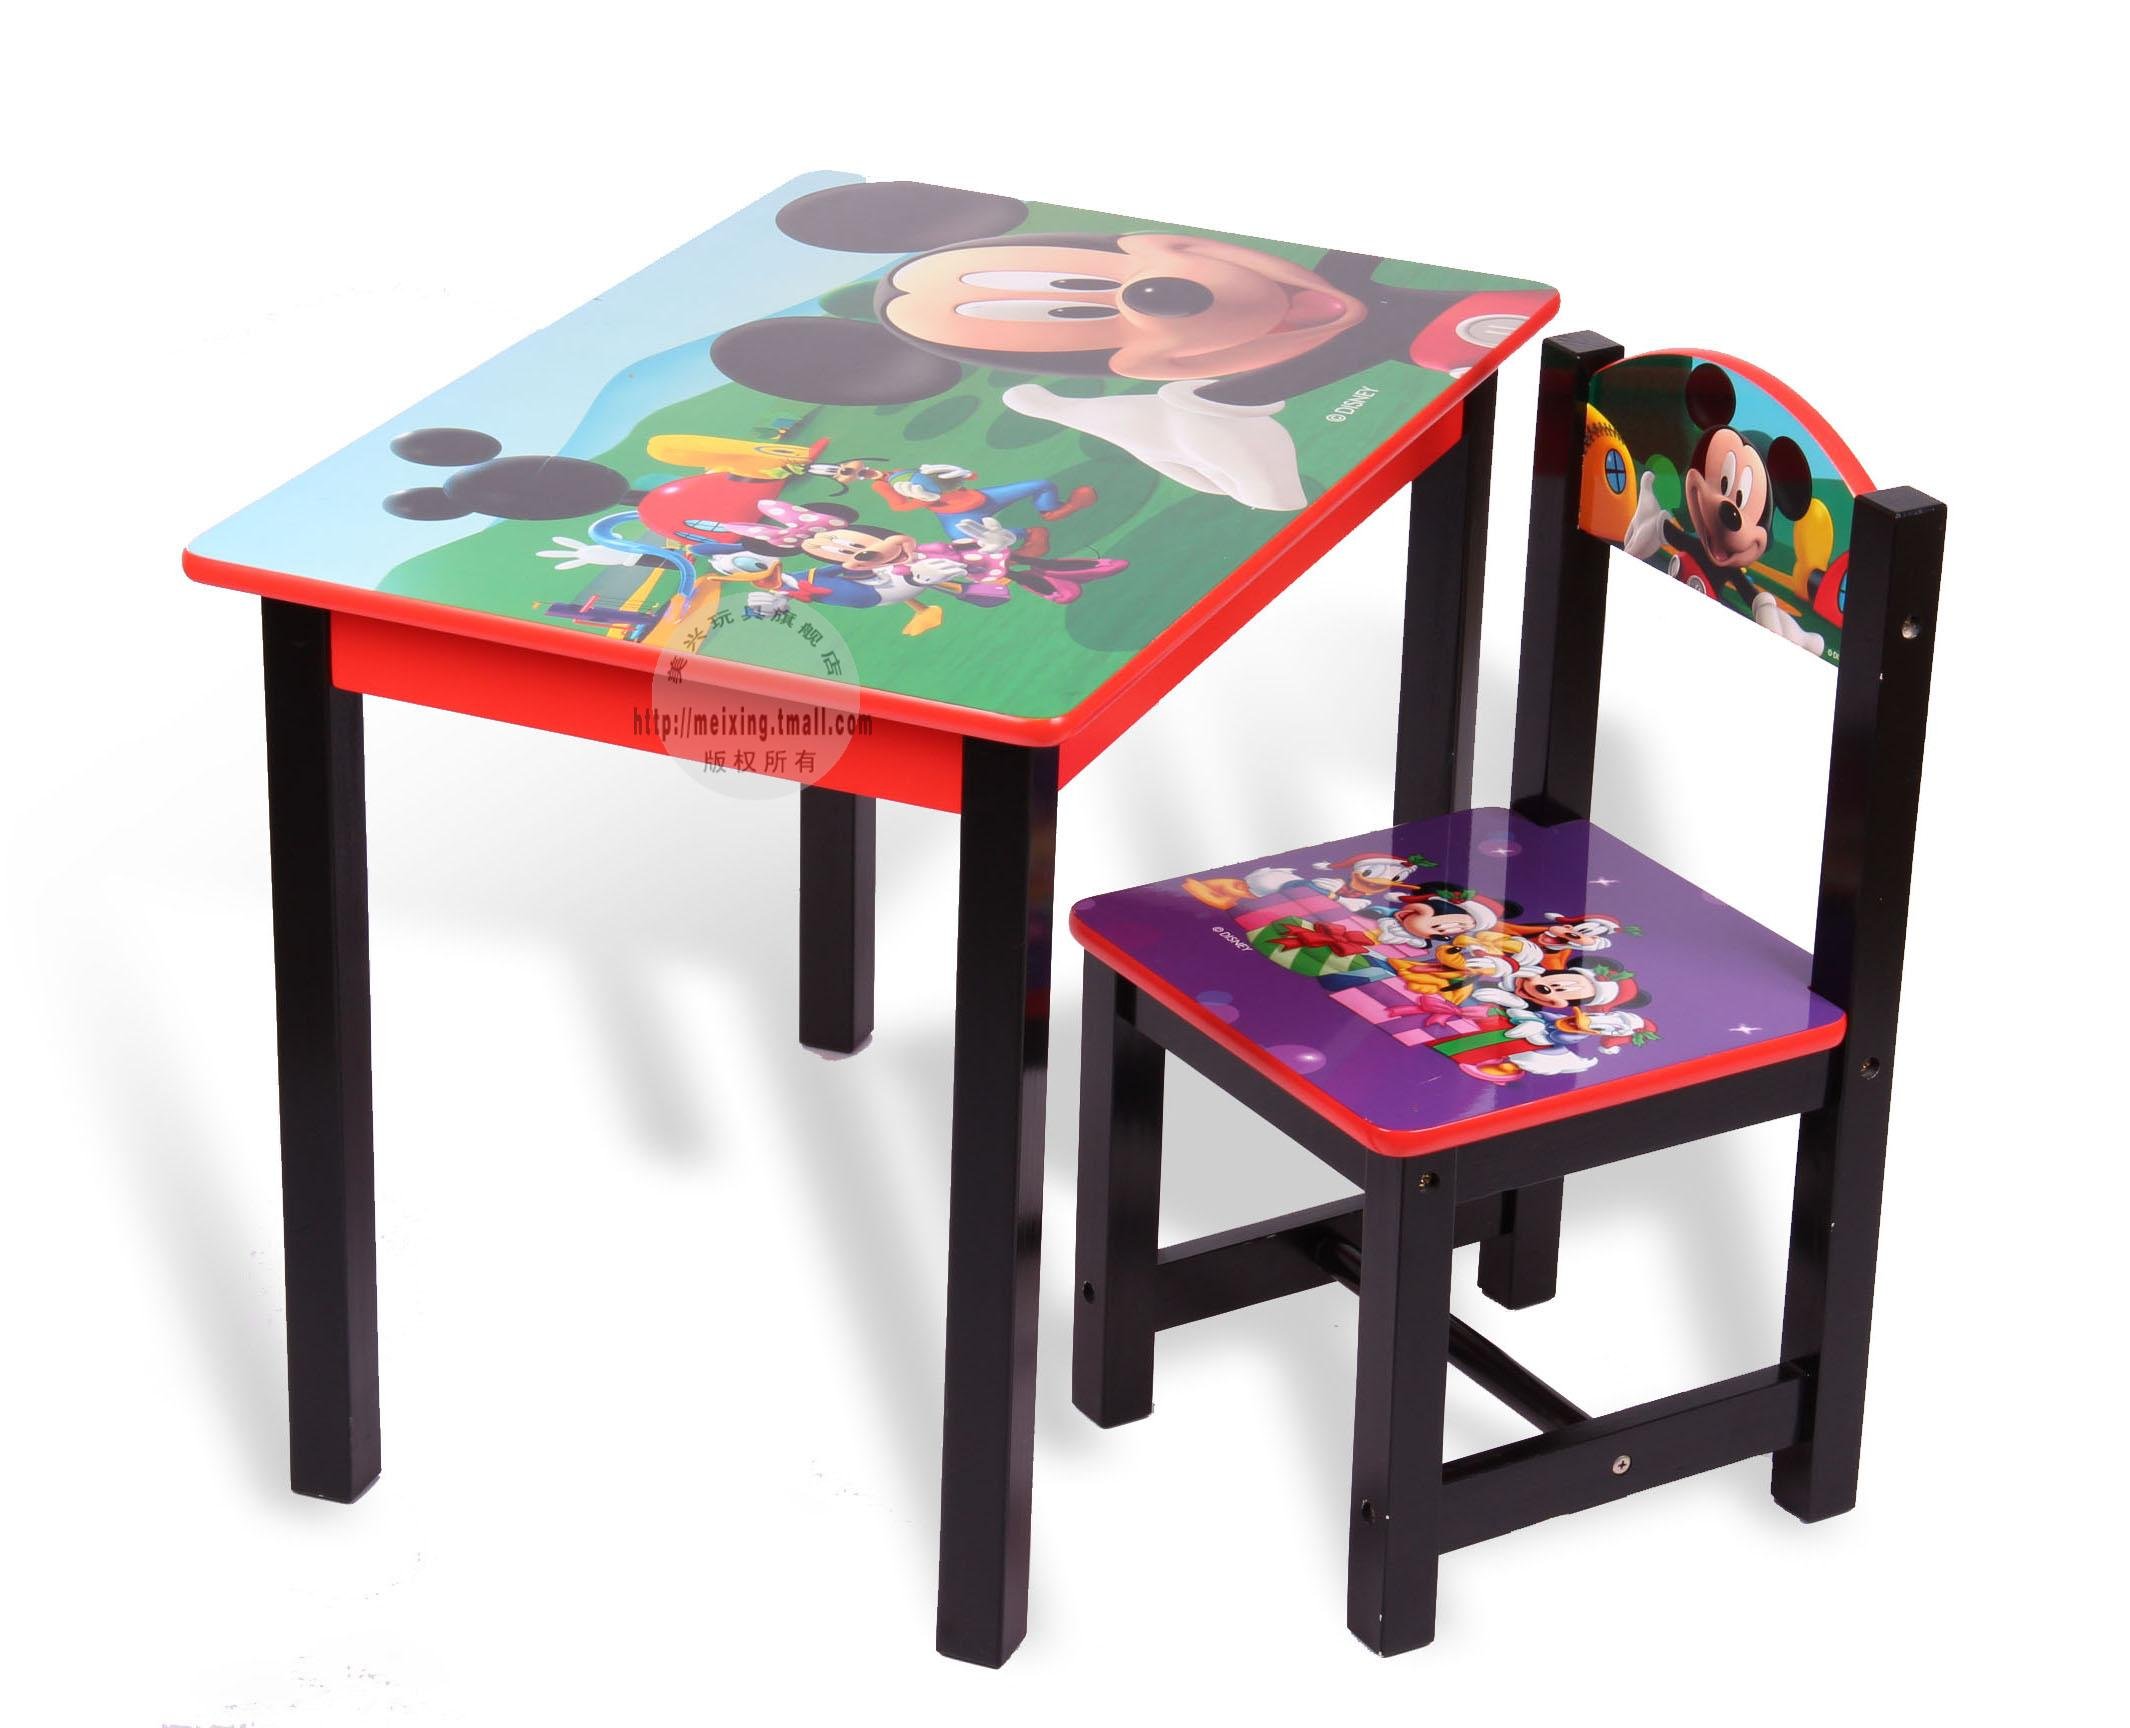 столы для улицы детский сад